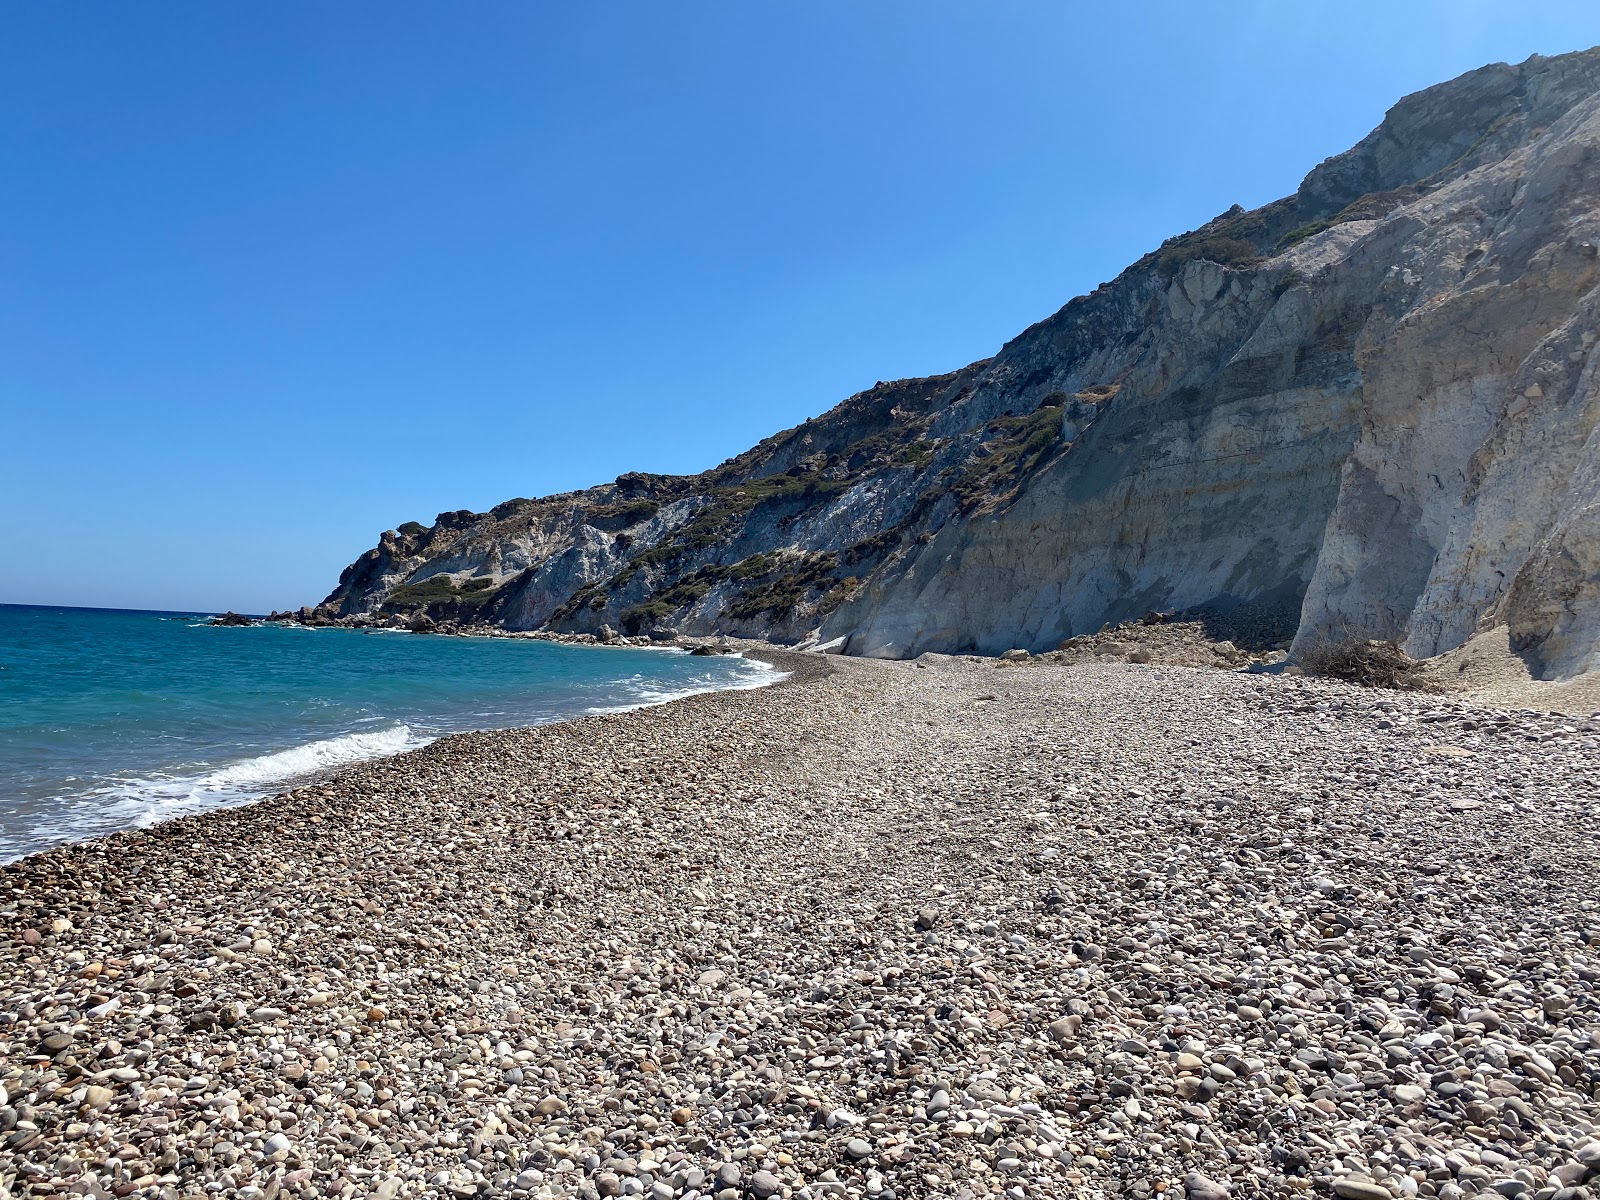 Kolimpisionas beach'in fotoğrafı mavi saf su yüzey ile